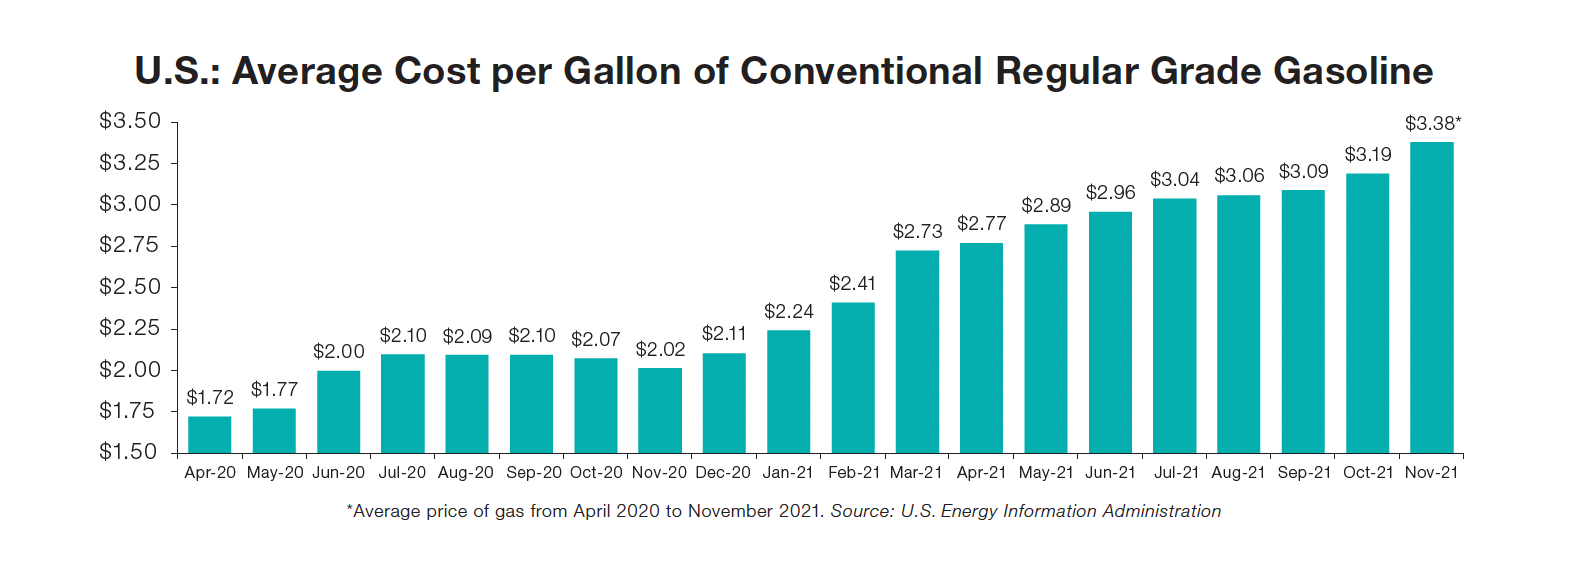 U.S. Average Cost per Gallon of Conventional Regular Grade Gasoline